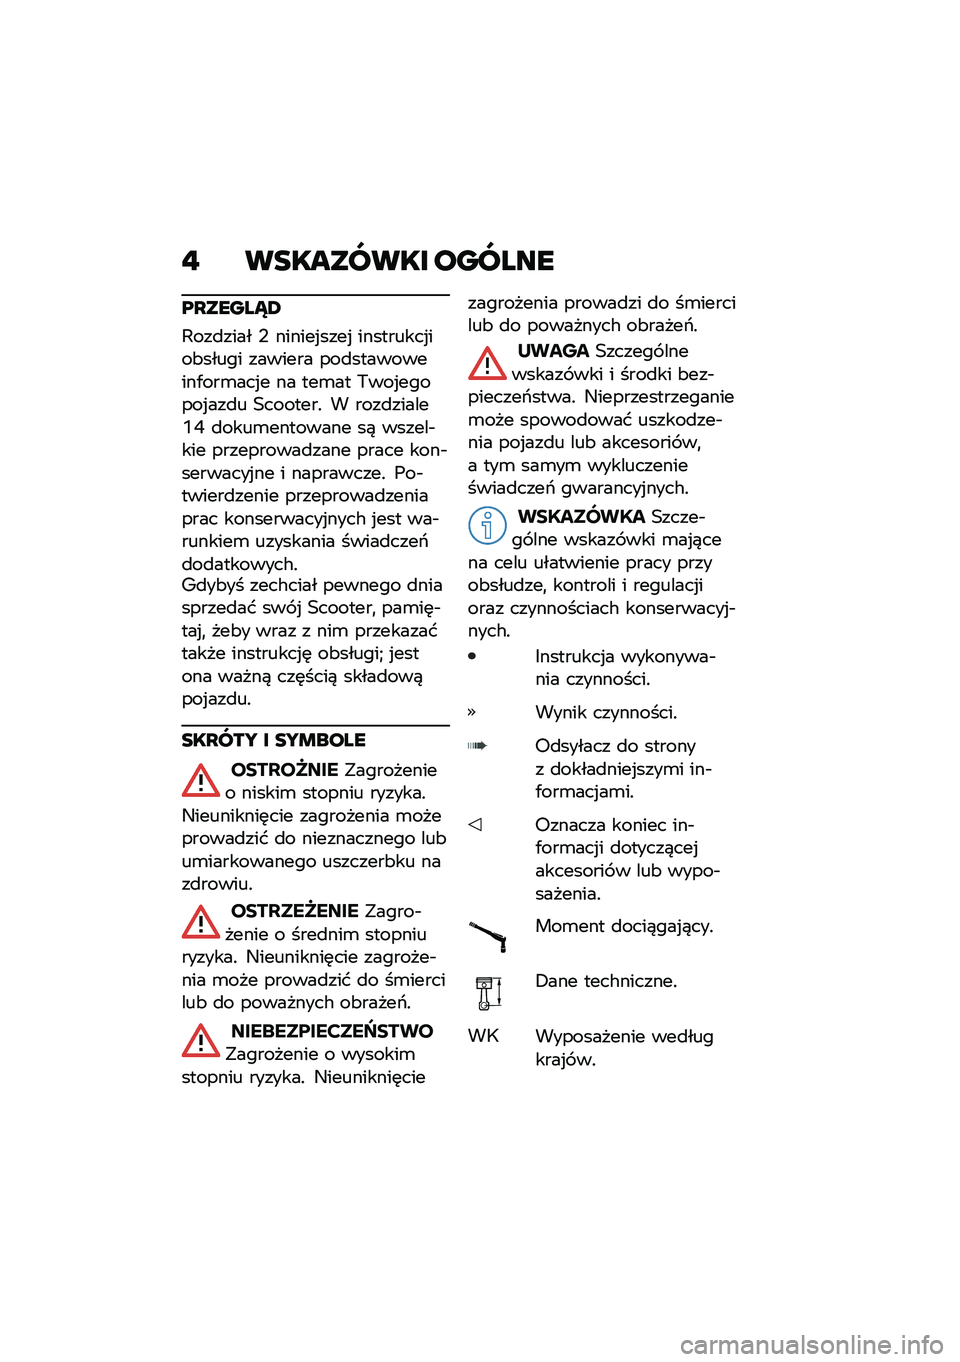 BMW MOTORRAD C 400 X 2020  Instrukcja obsługi (in Polish) �" ��������� ������
��O�����X�4
�,���
���� �- ������%����% ���������%���&����� ������� ���
����������/���\b���%� �� ���\b��